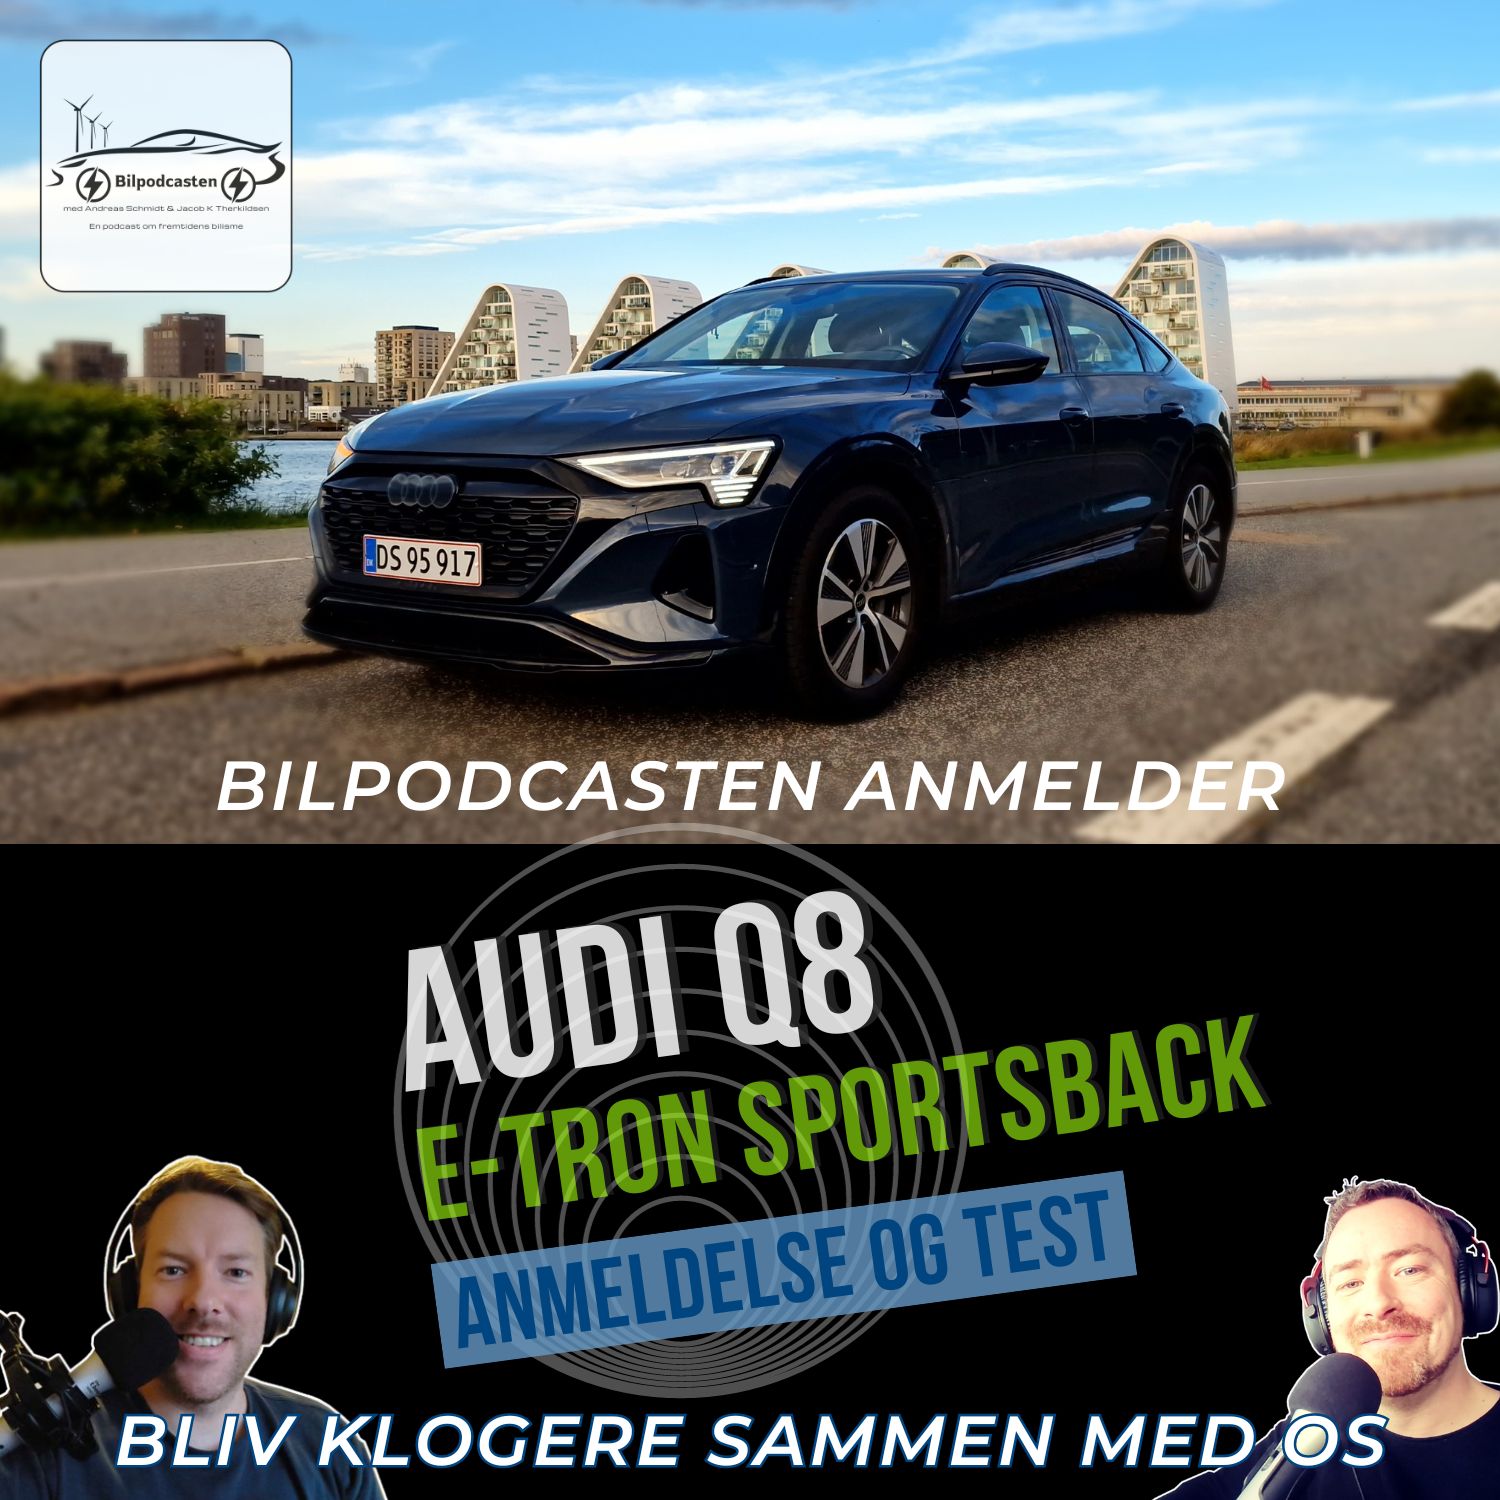 Audi Q8 Etron Sportsback - En bilanmeldelse fra Bilpodcasten